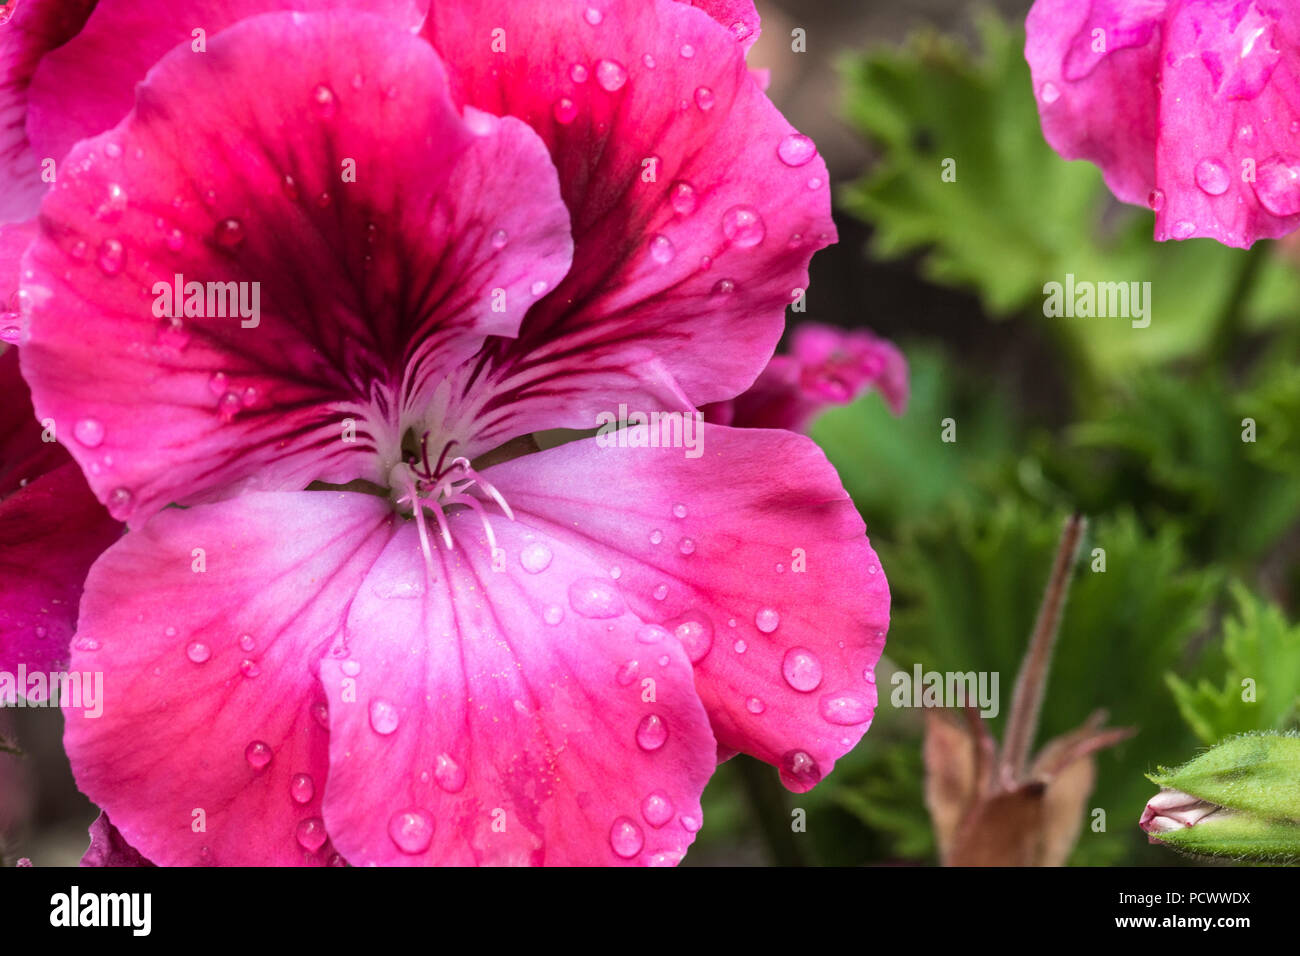 the mottled geranium flower in its full bloom Stock Photo